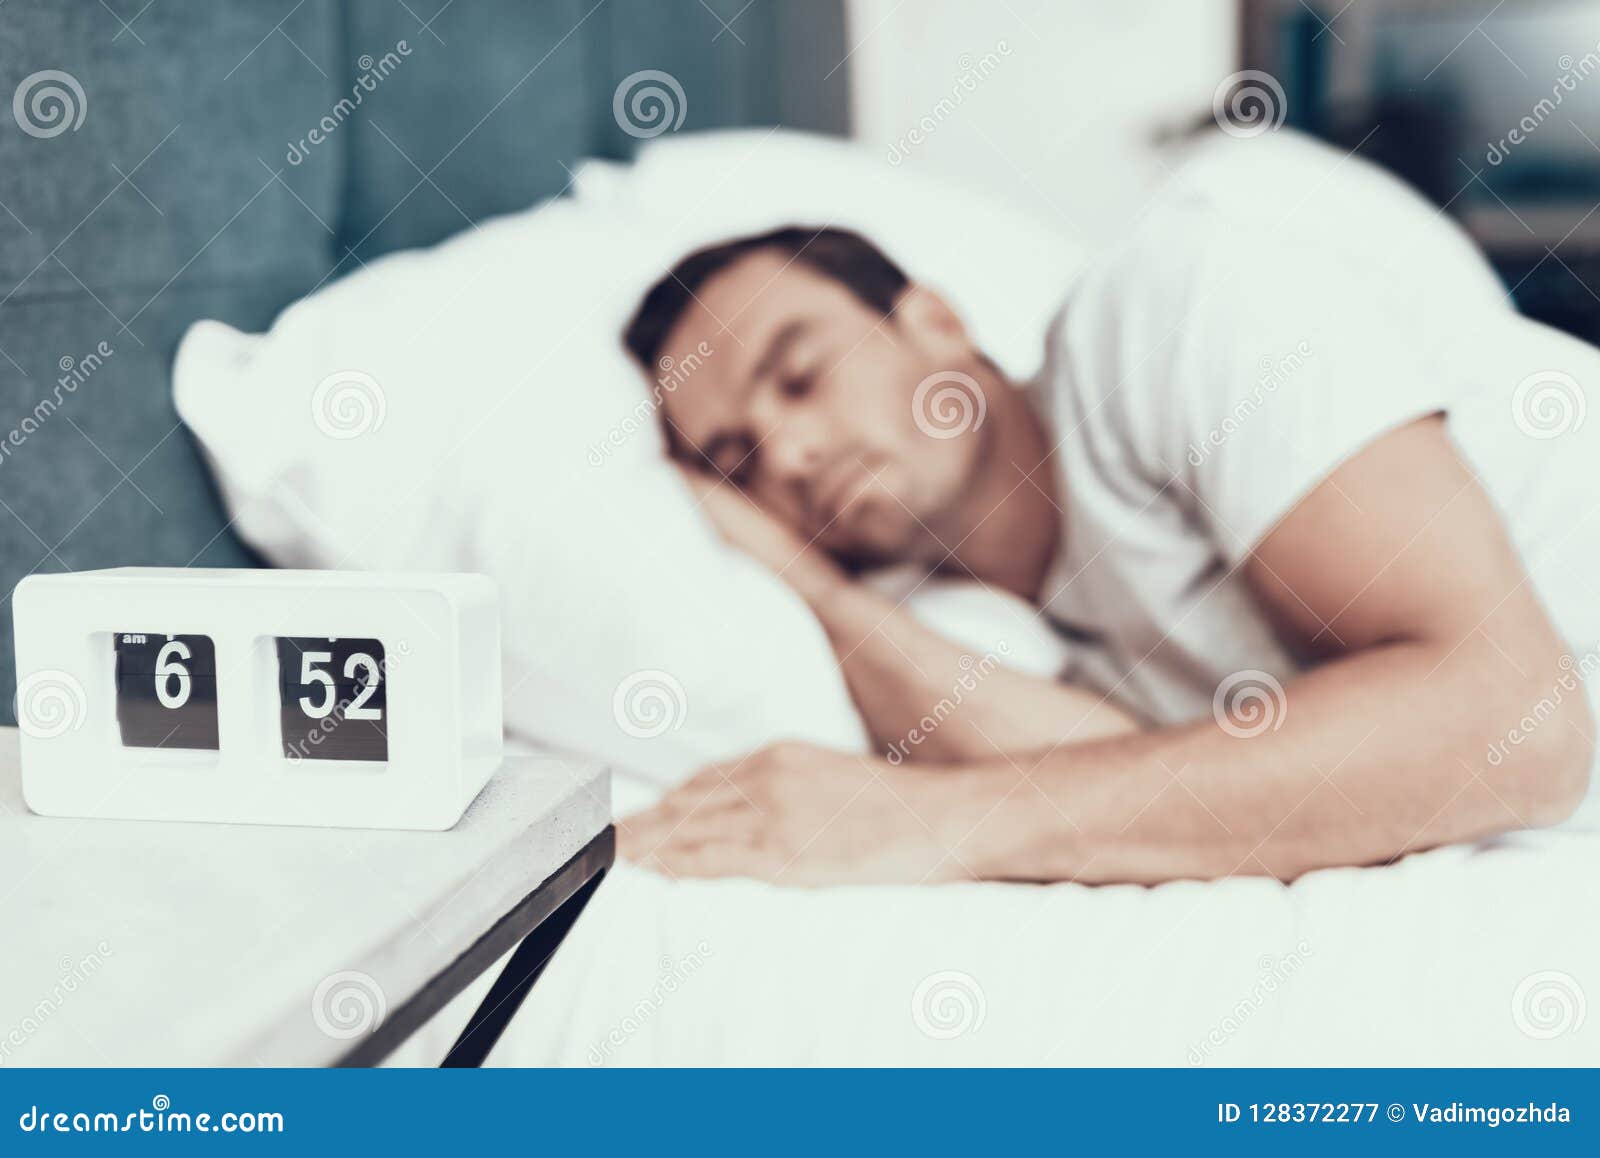 Sleep near. Спящий человек с рукой под головой. Сигнализация возле кровати. Люди спят около тумбочки. Счастливые люди спят в капсулах.